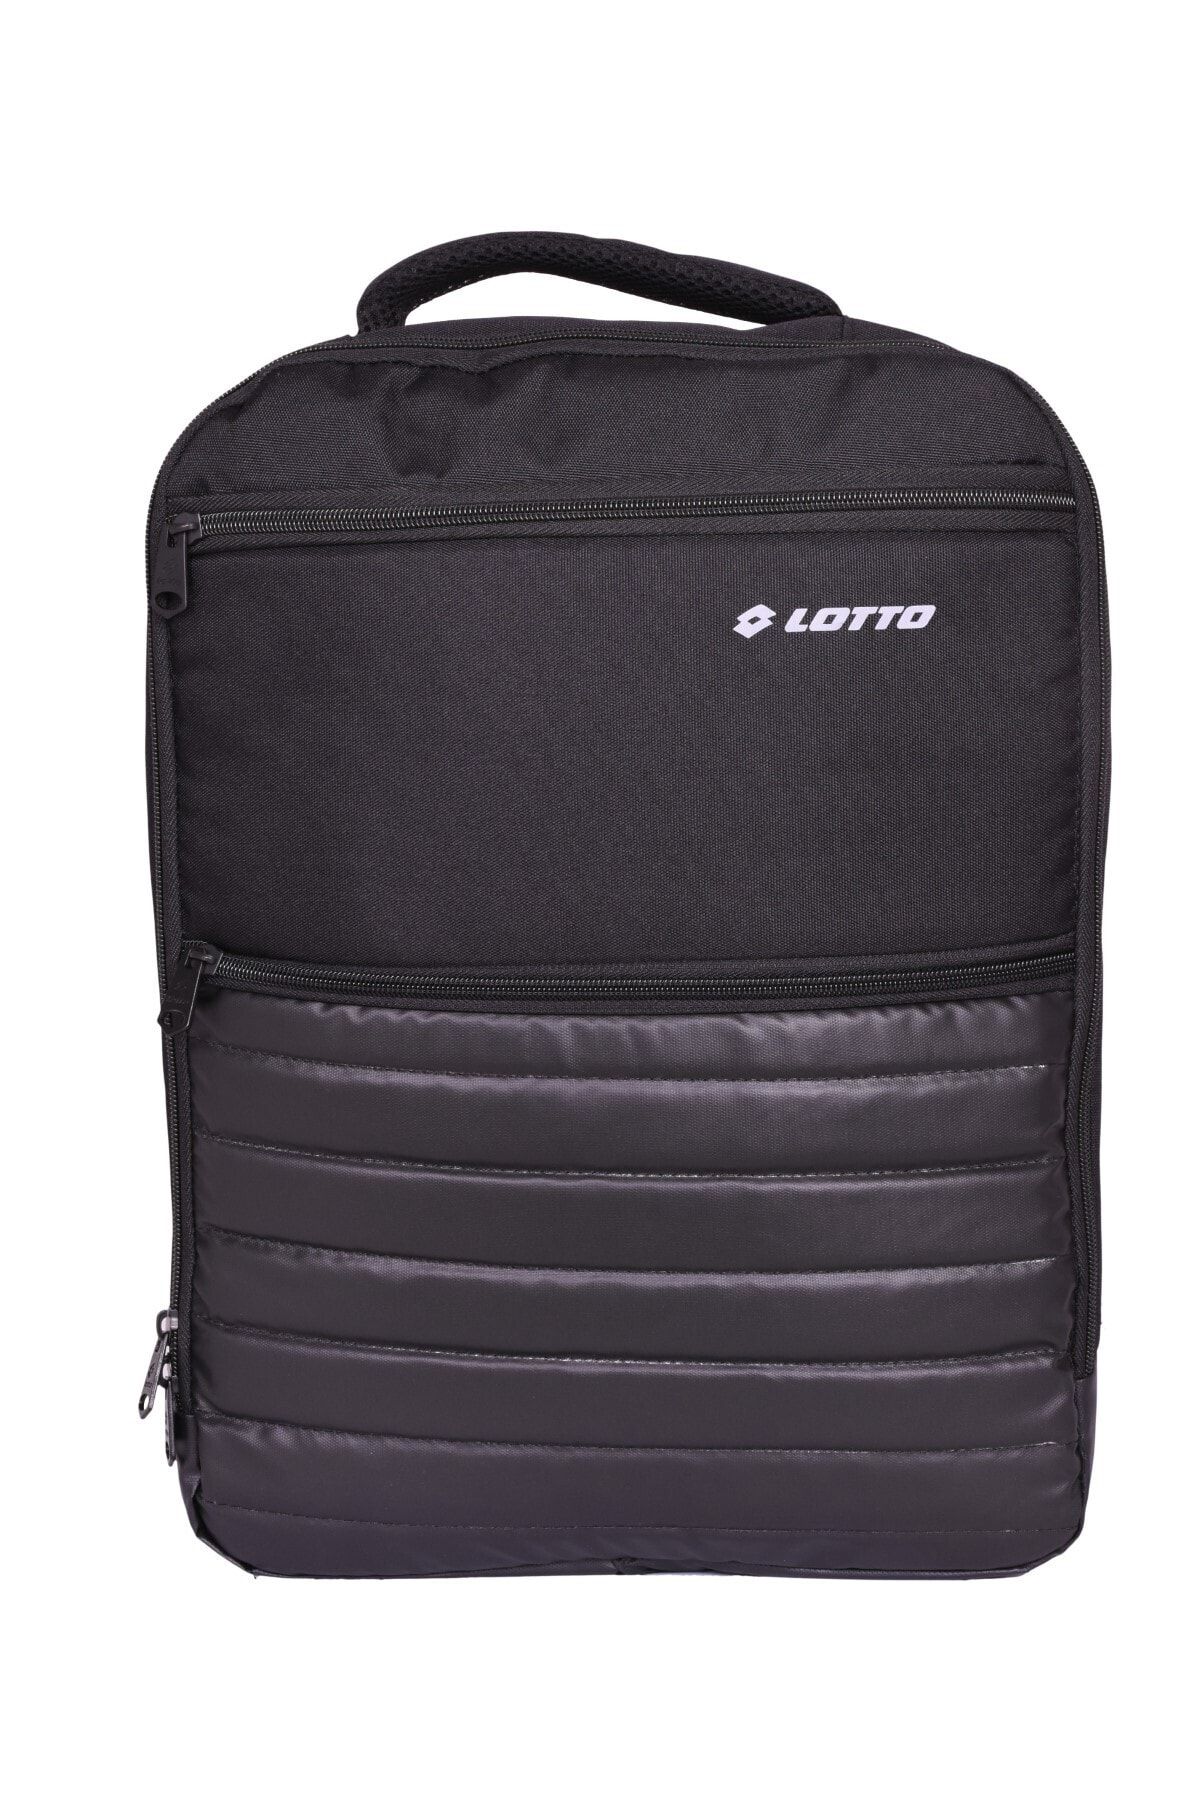 Lotto Unisex Sırt Çantası - Prego Backpack - R5223